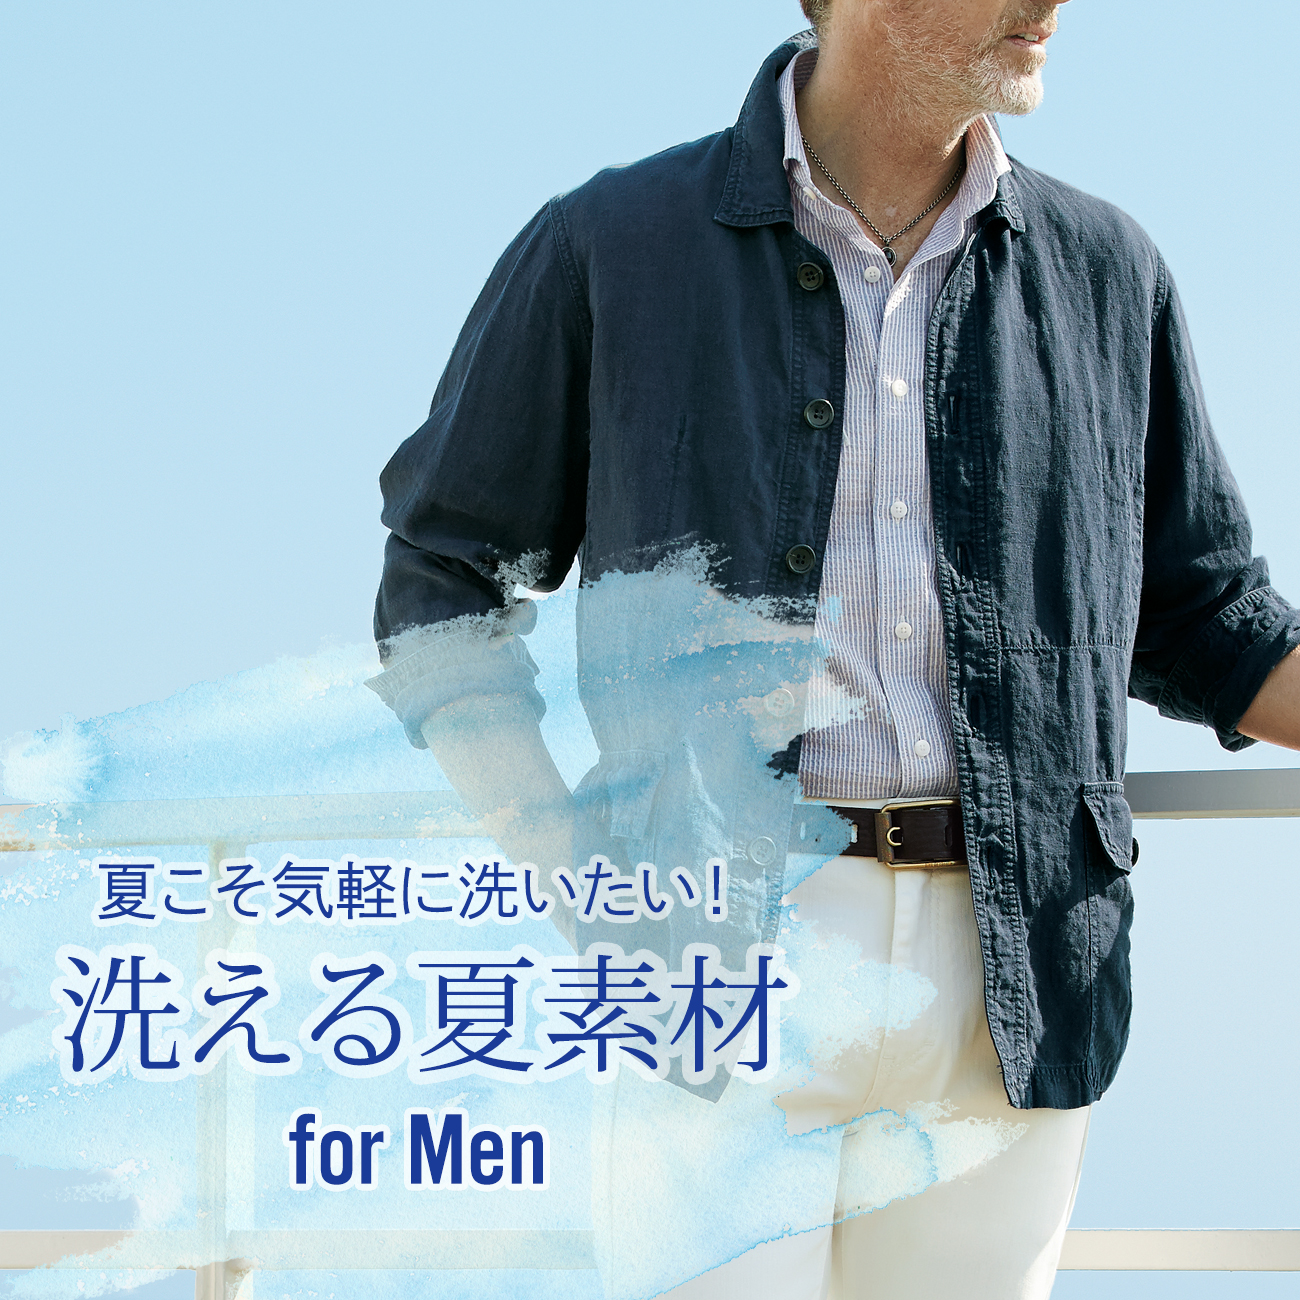 【特集】SUMMER BOTTOMS for MEN